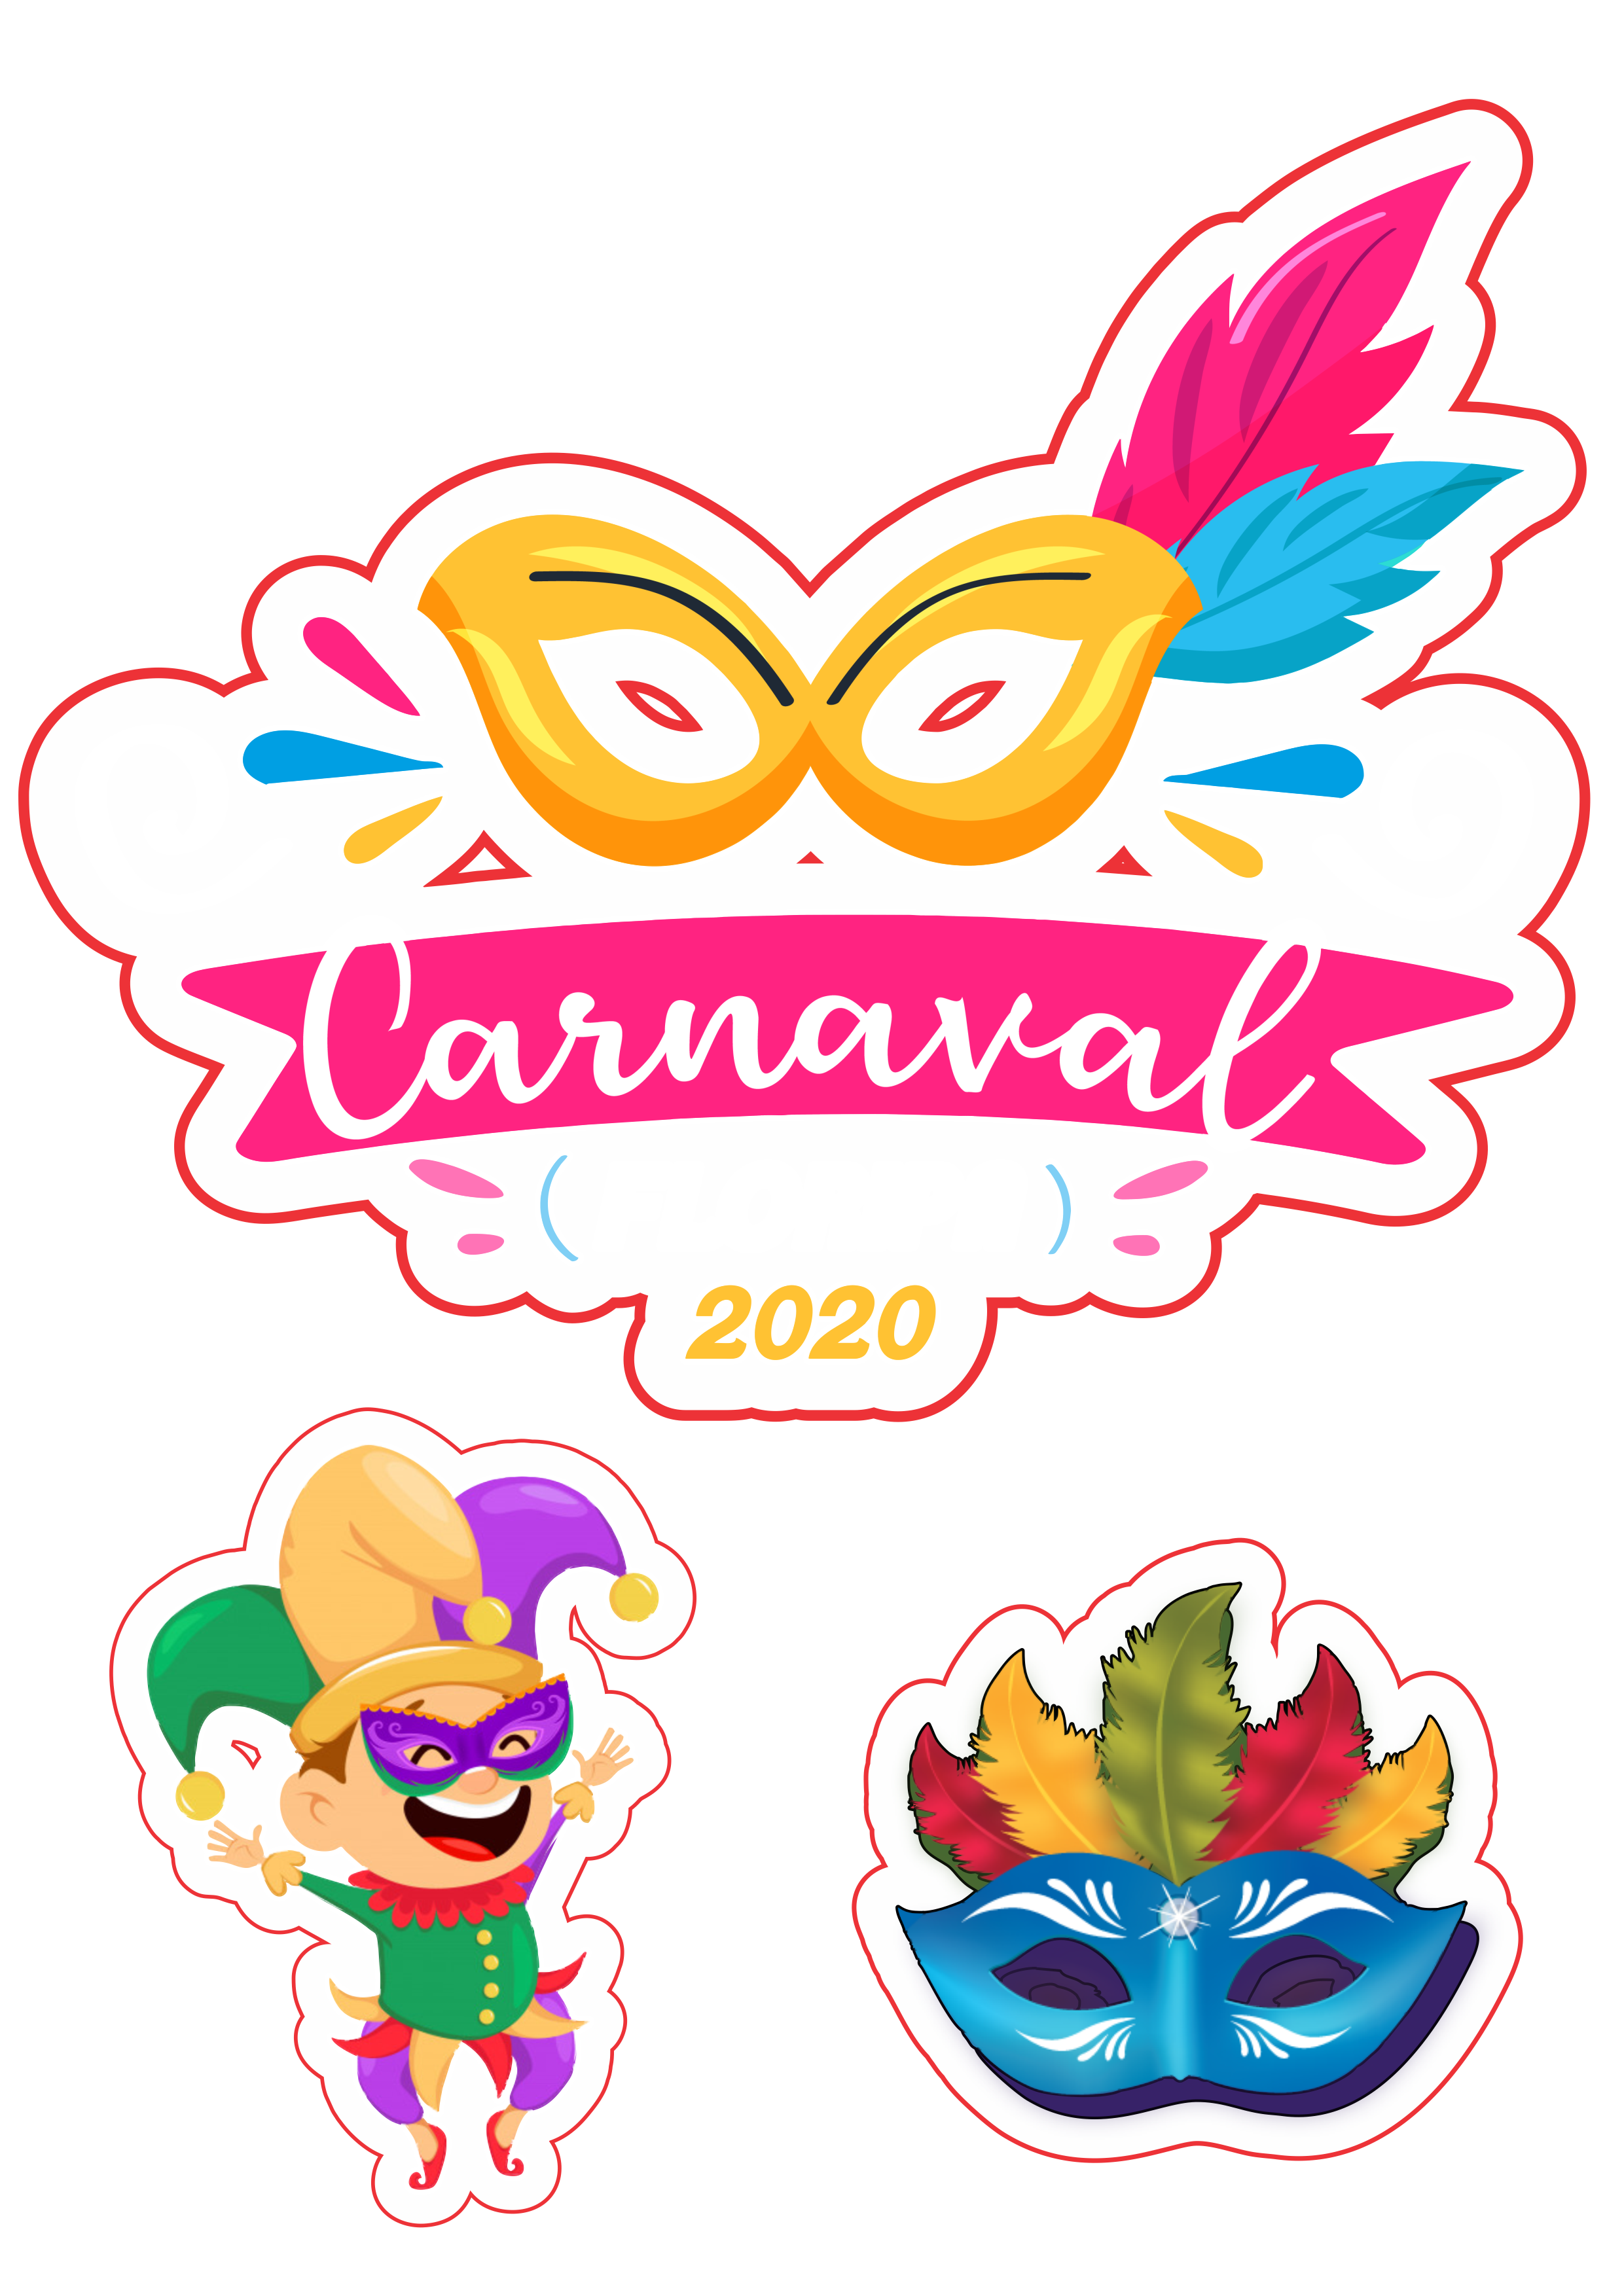 Carnaval 2020 topo de bolo png